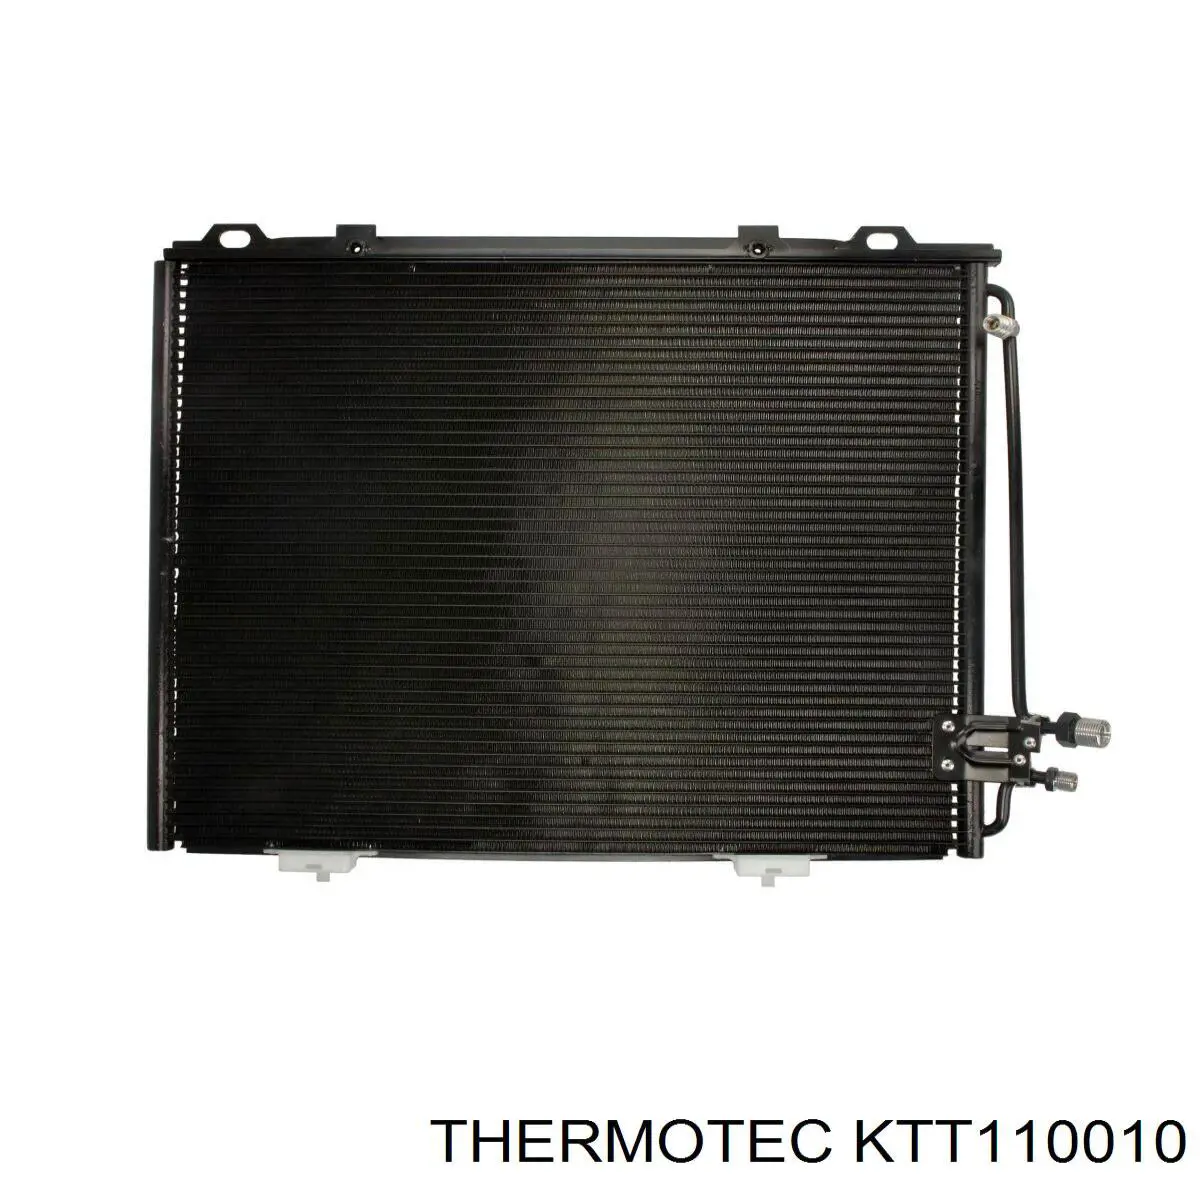 KTT110010 Thermotec condensador aire acondicionado